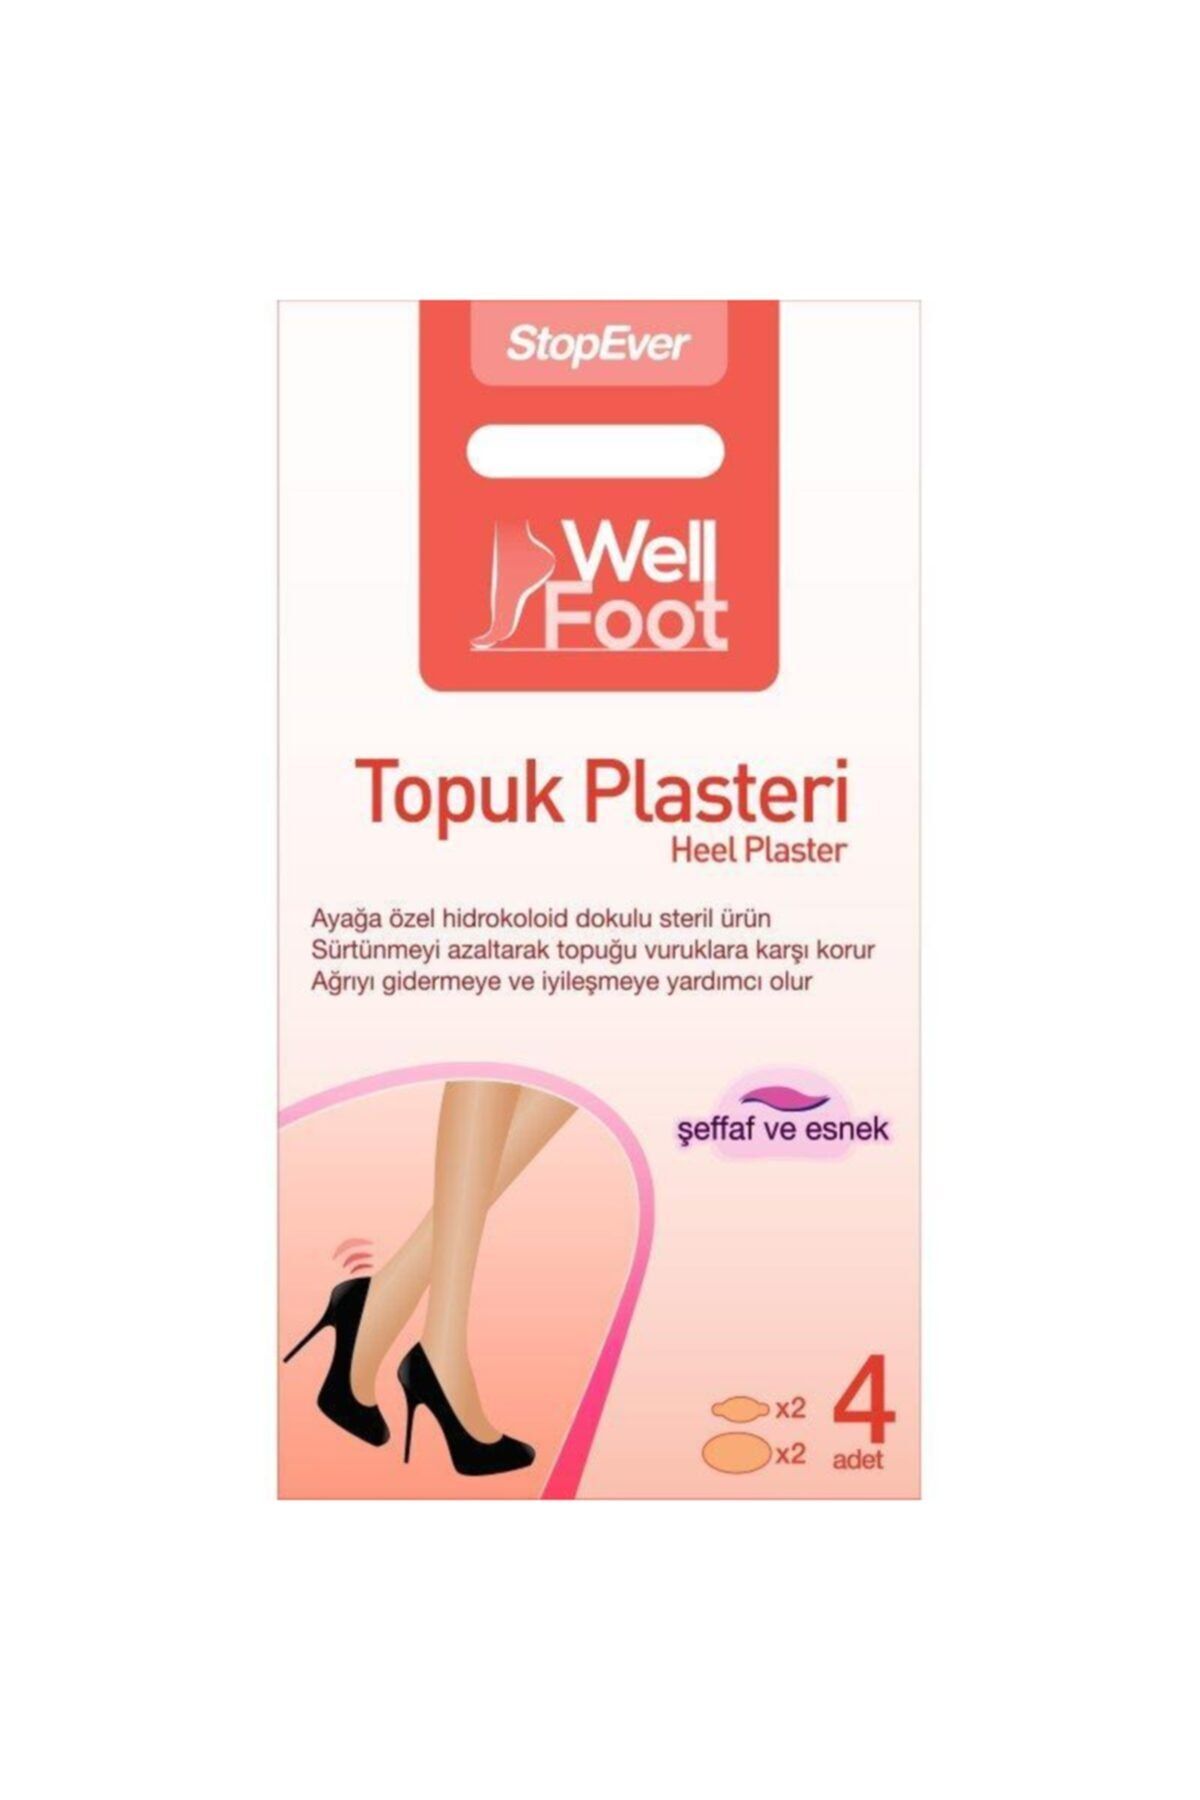 StopEver Well Foot Topuk Plasteri - 1 Adet (1x4 Plaster - 2 Adet 25x58 Mm Ve 2 Adet 69x44 Mm-)